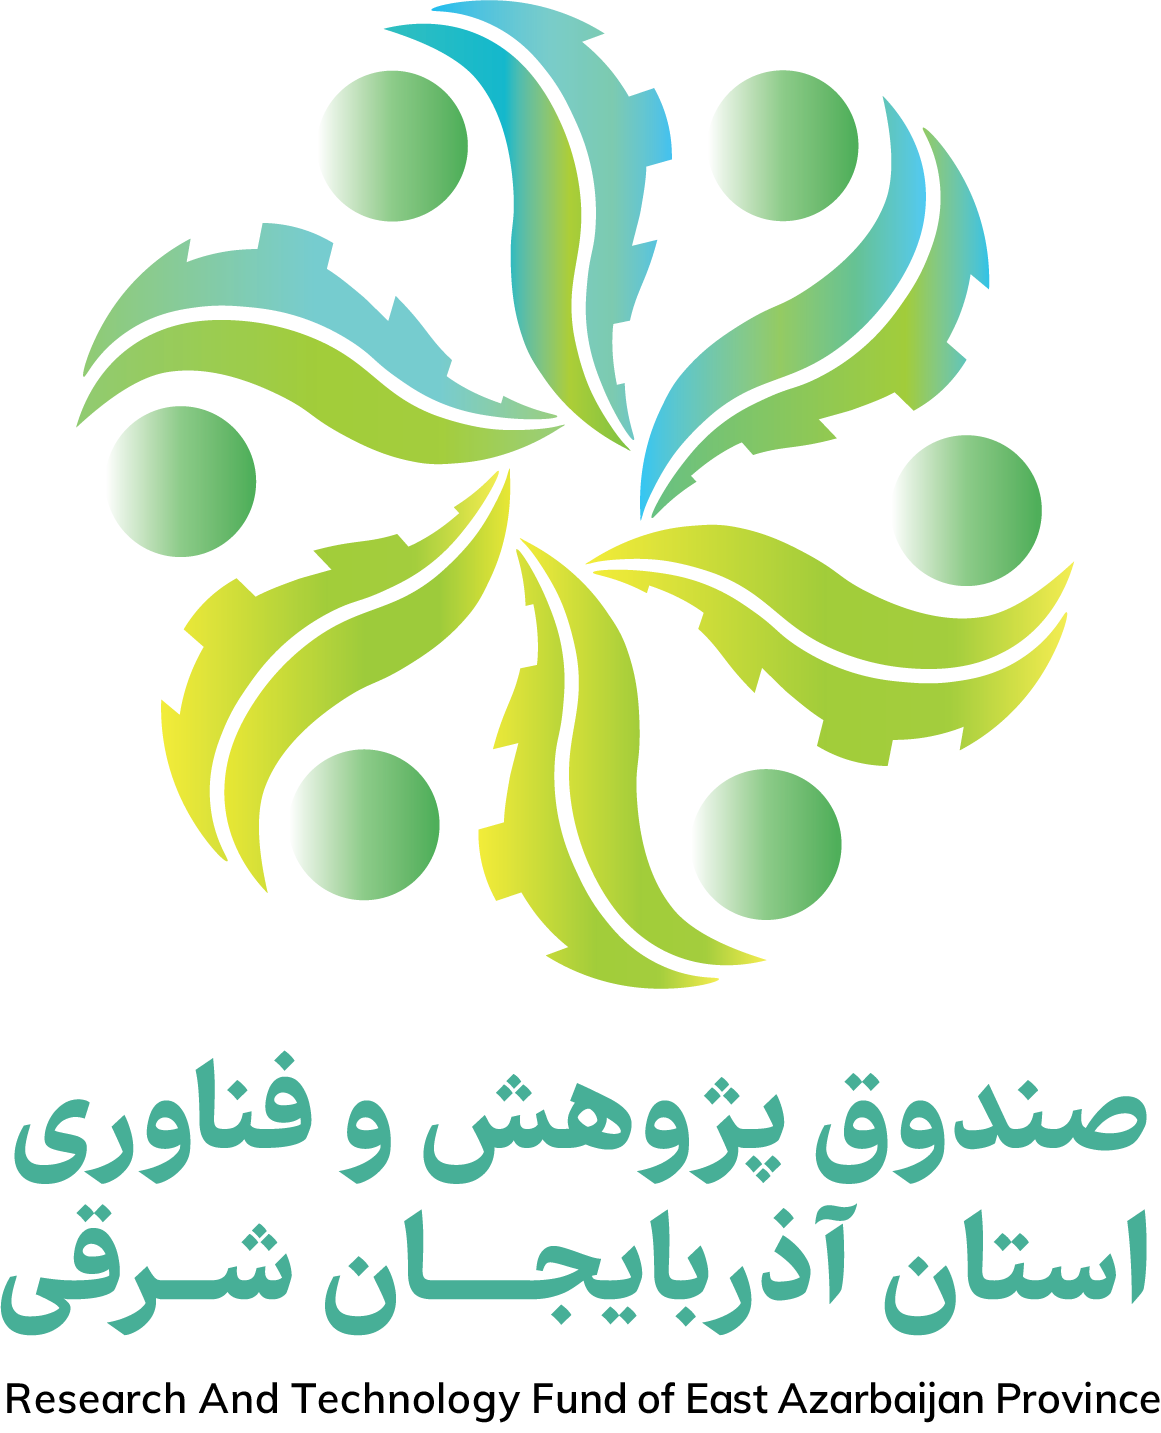 صندوق پژوهش و فناوری غیردولتی استان آذربایجان شرقی 